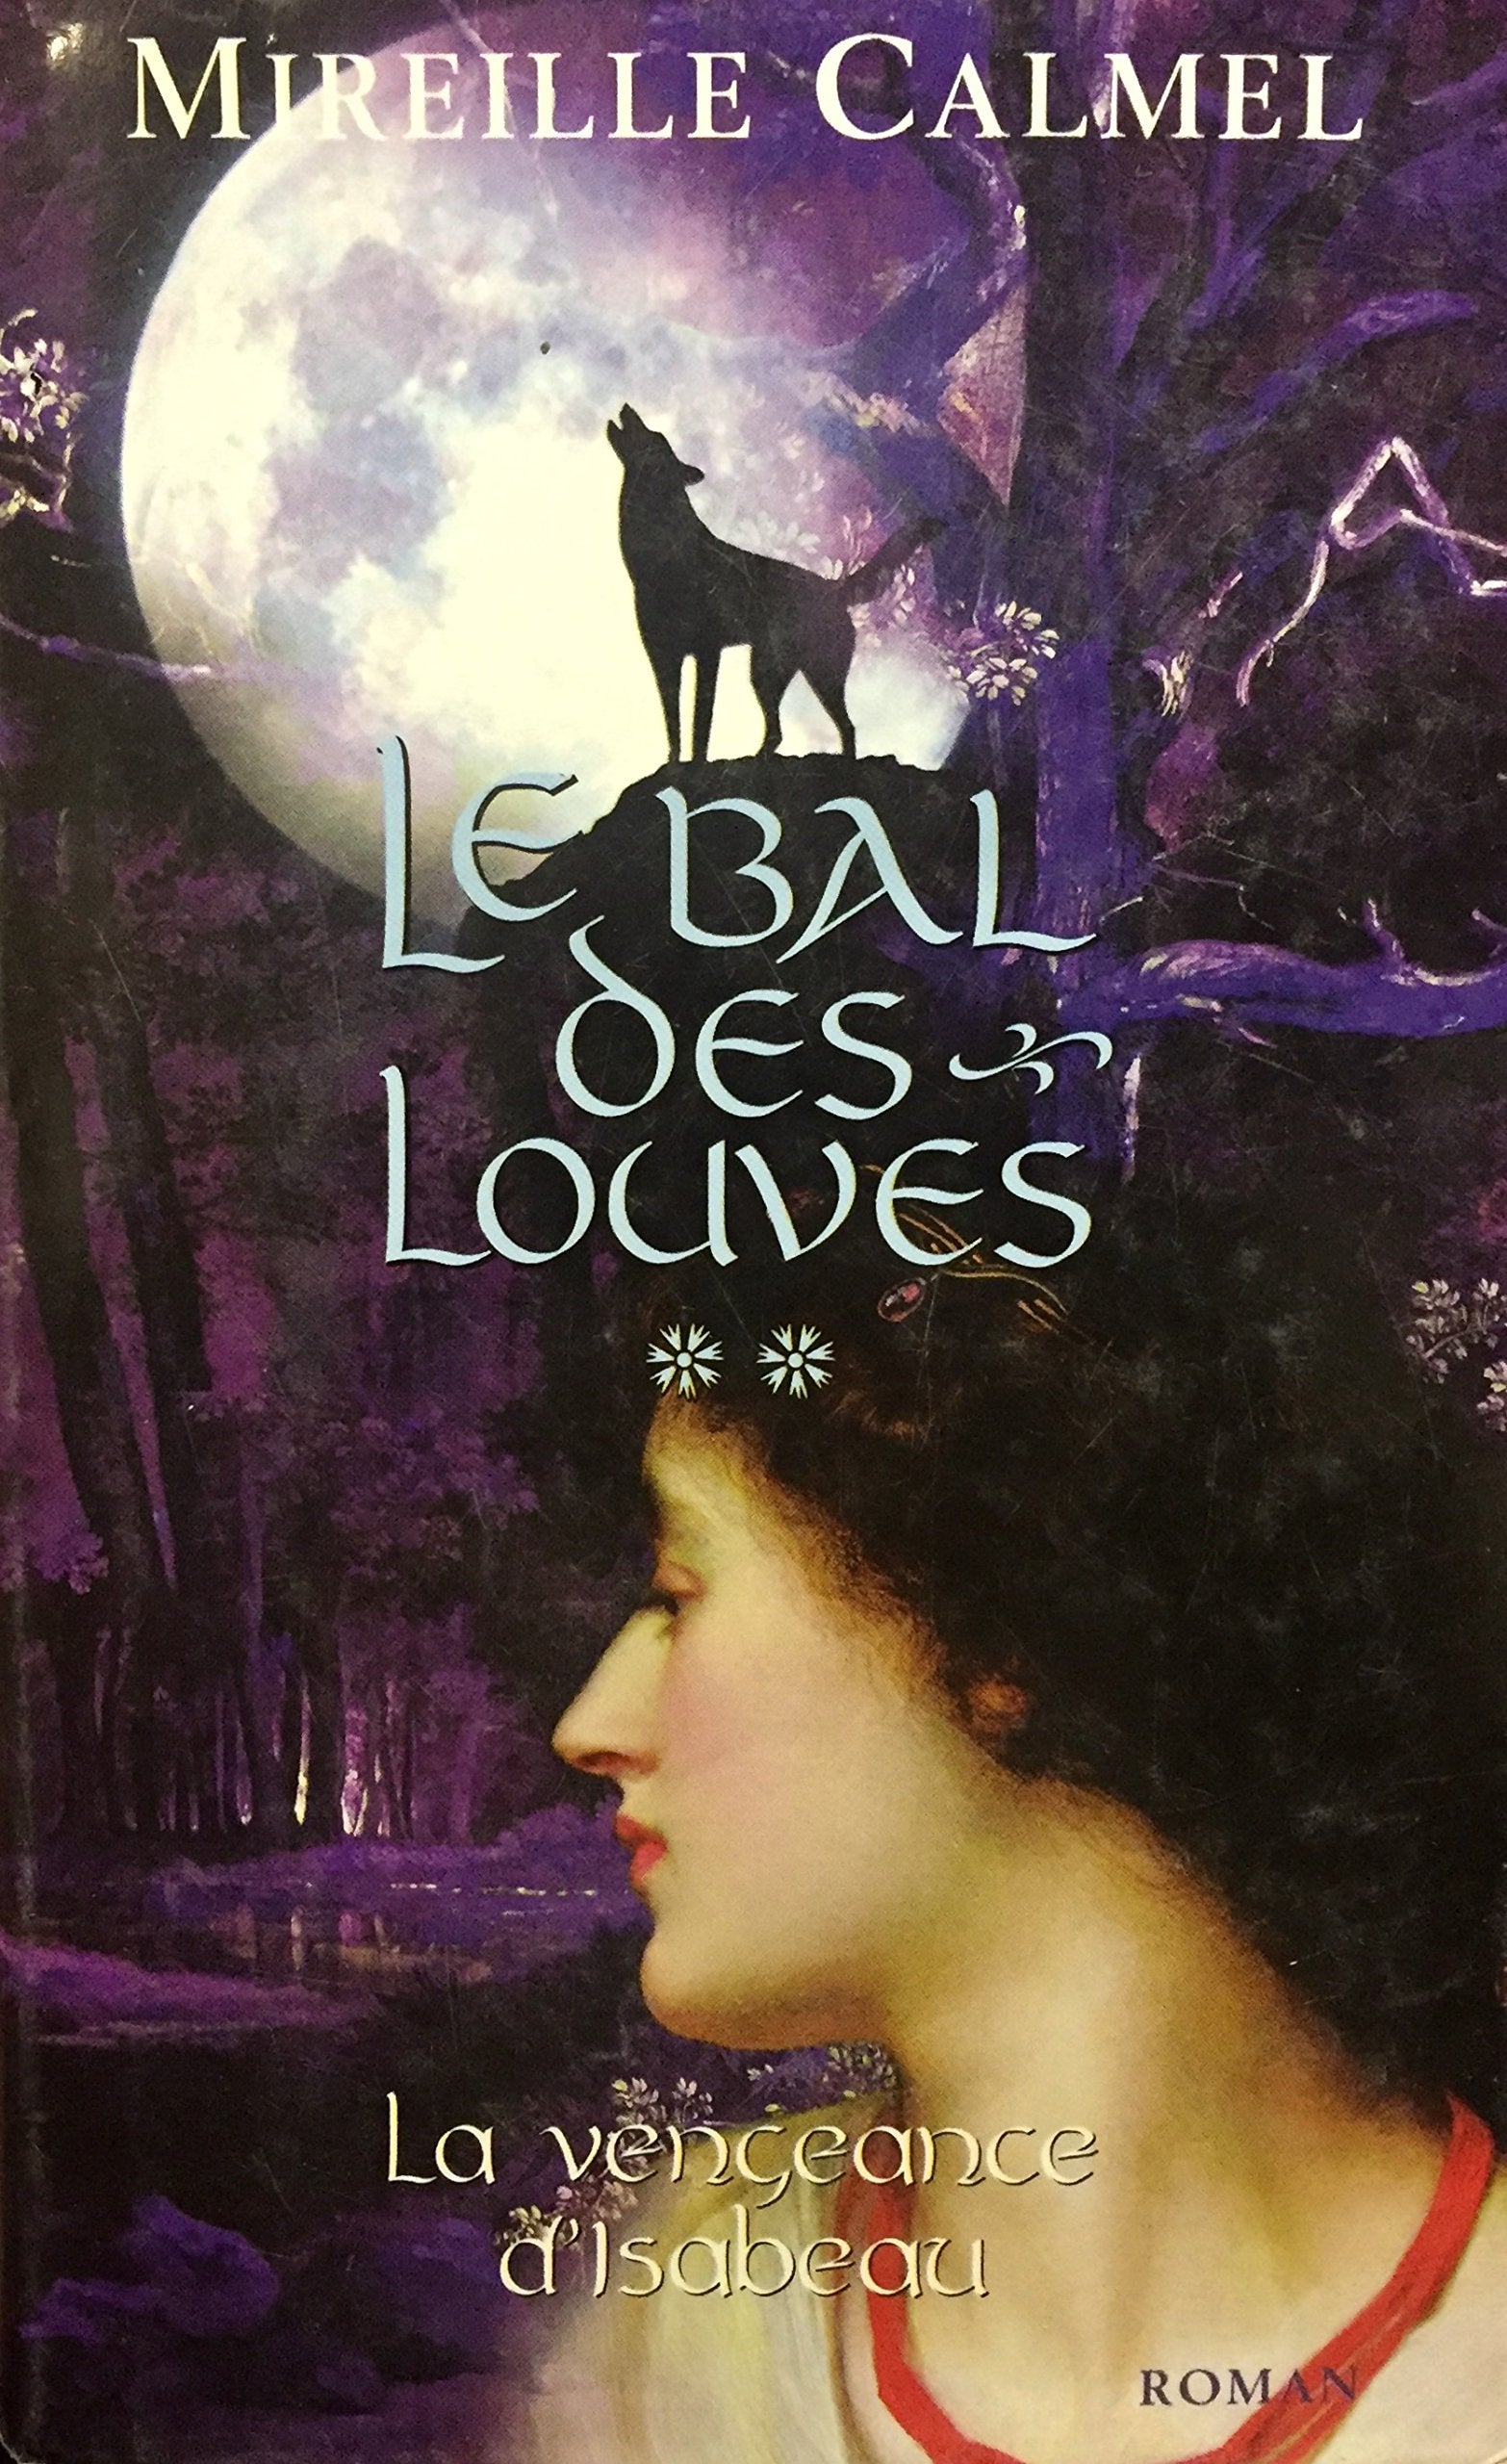 Livre ISBN 2744170216 Le bal des louves # 2 : La vengeance d'Isabeau (Mireille Calmel)